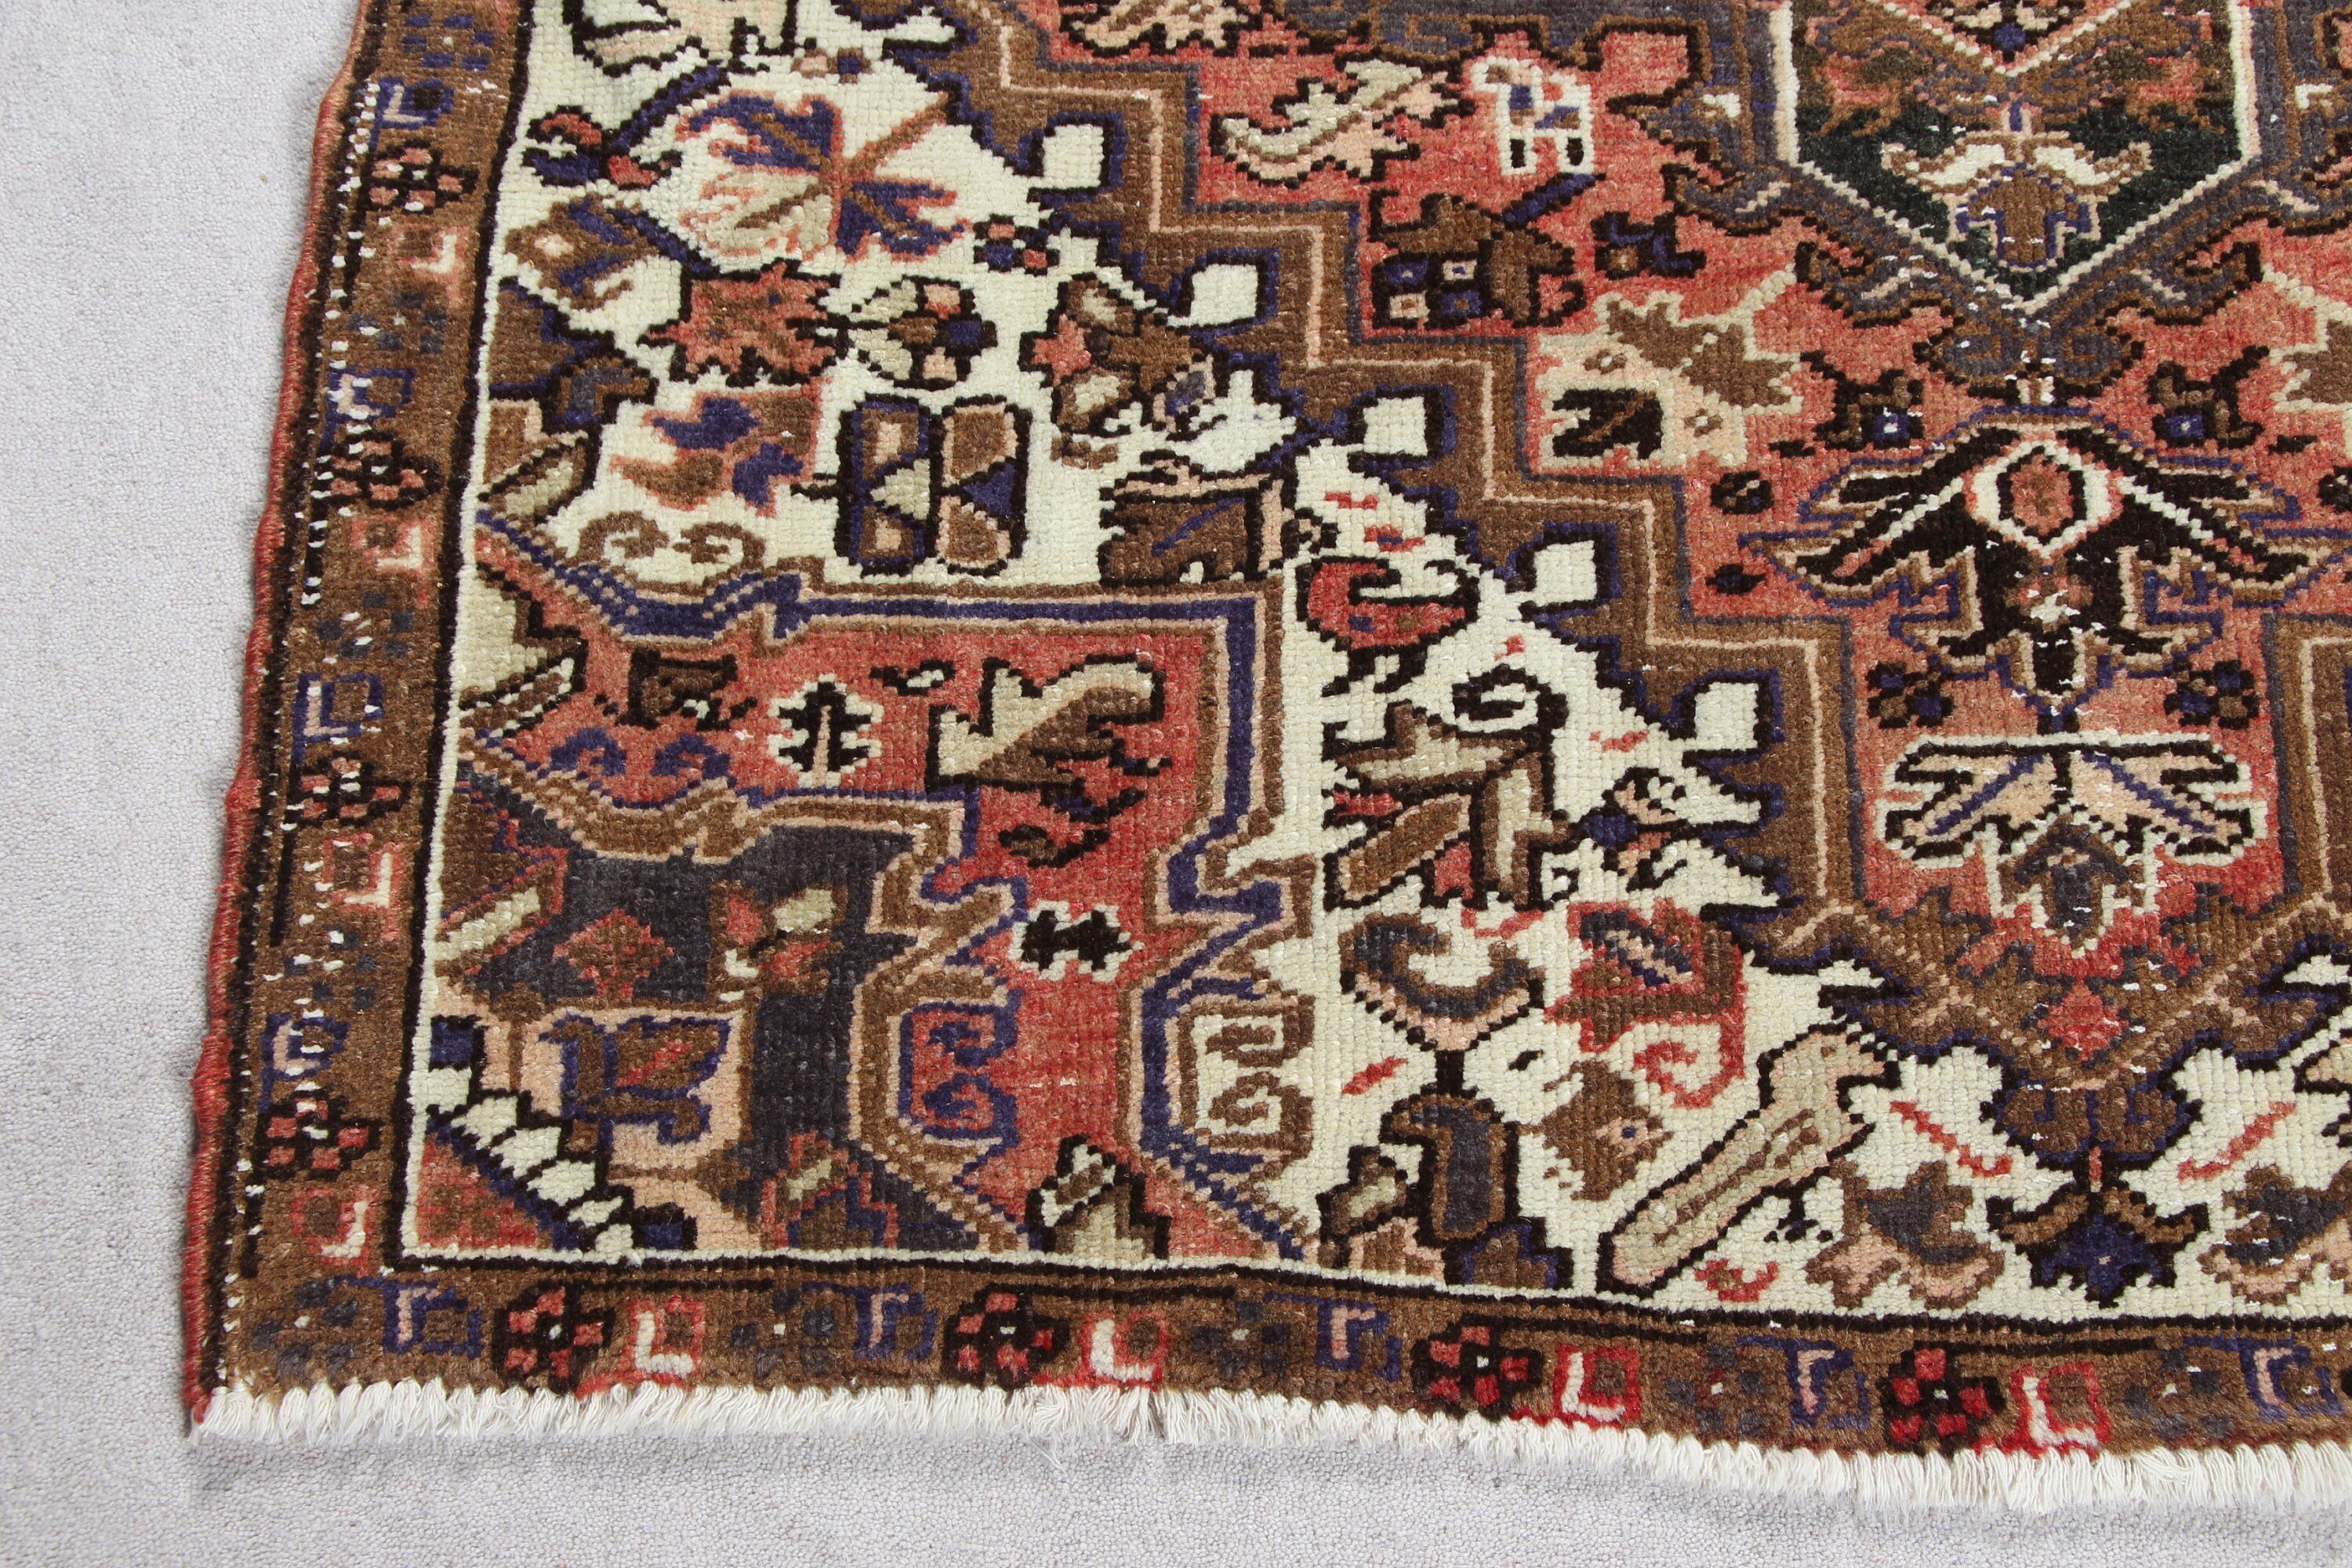 Turkish Rugs, Bedroom Rug, Rugs for Entry, Moroccan Rug, 4x4.6 ft Accent Rug, Nursery Rug, Orange Oriental Rugs, Oriental Rug, Vintage Rug